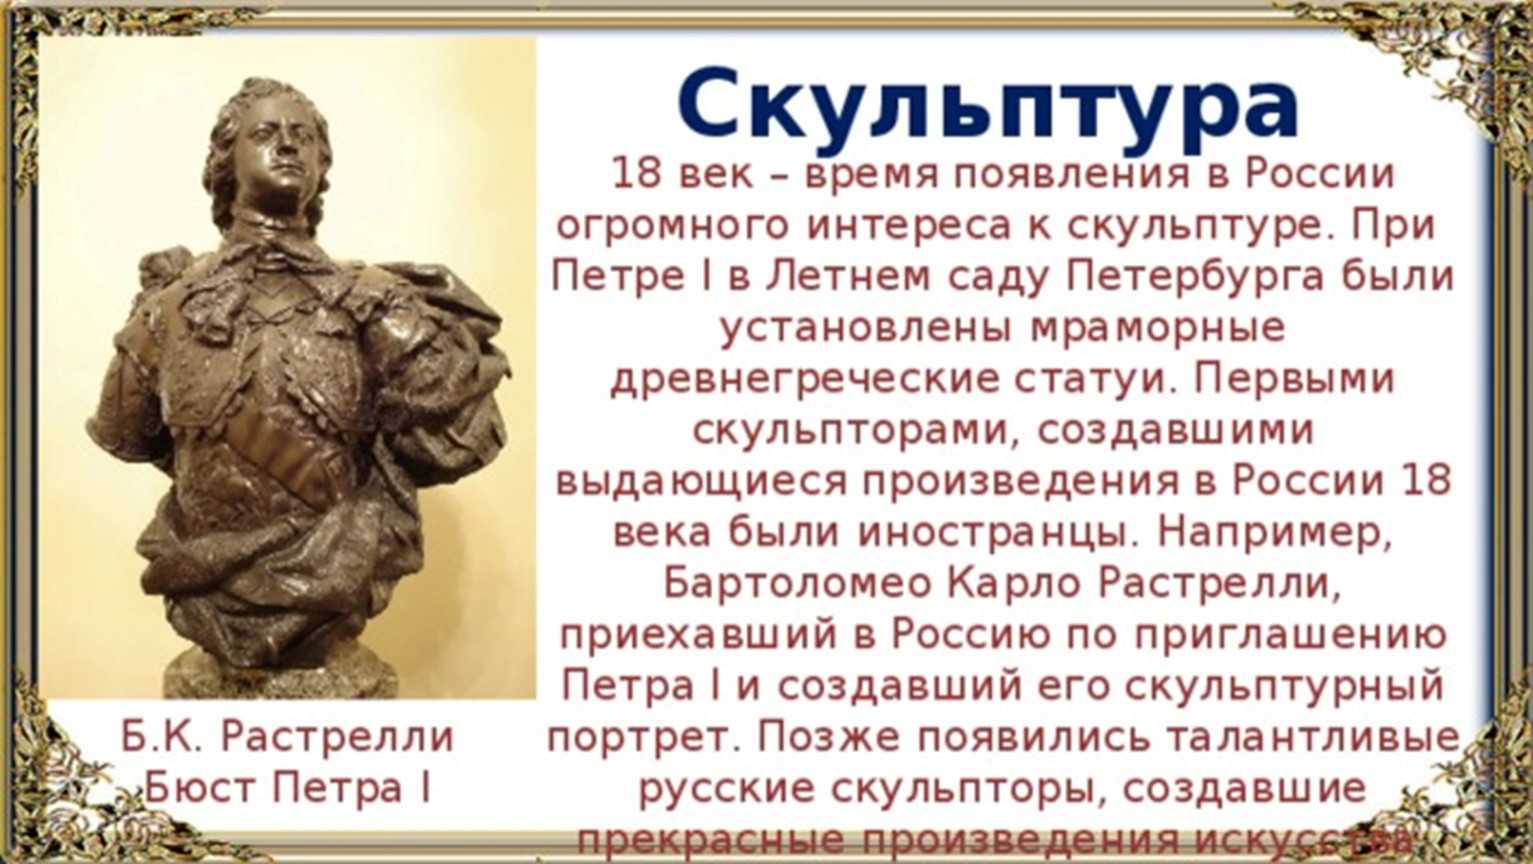 Какие культурные традиции были характерны для русской скульптуры 18 века?